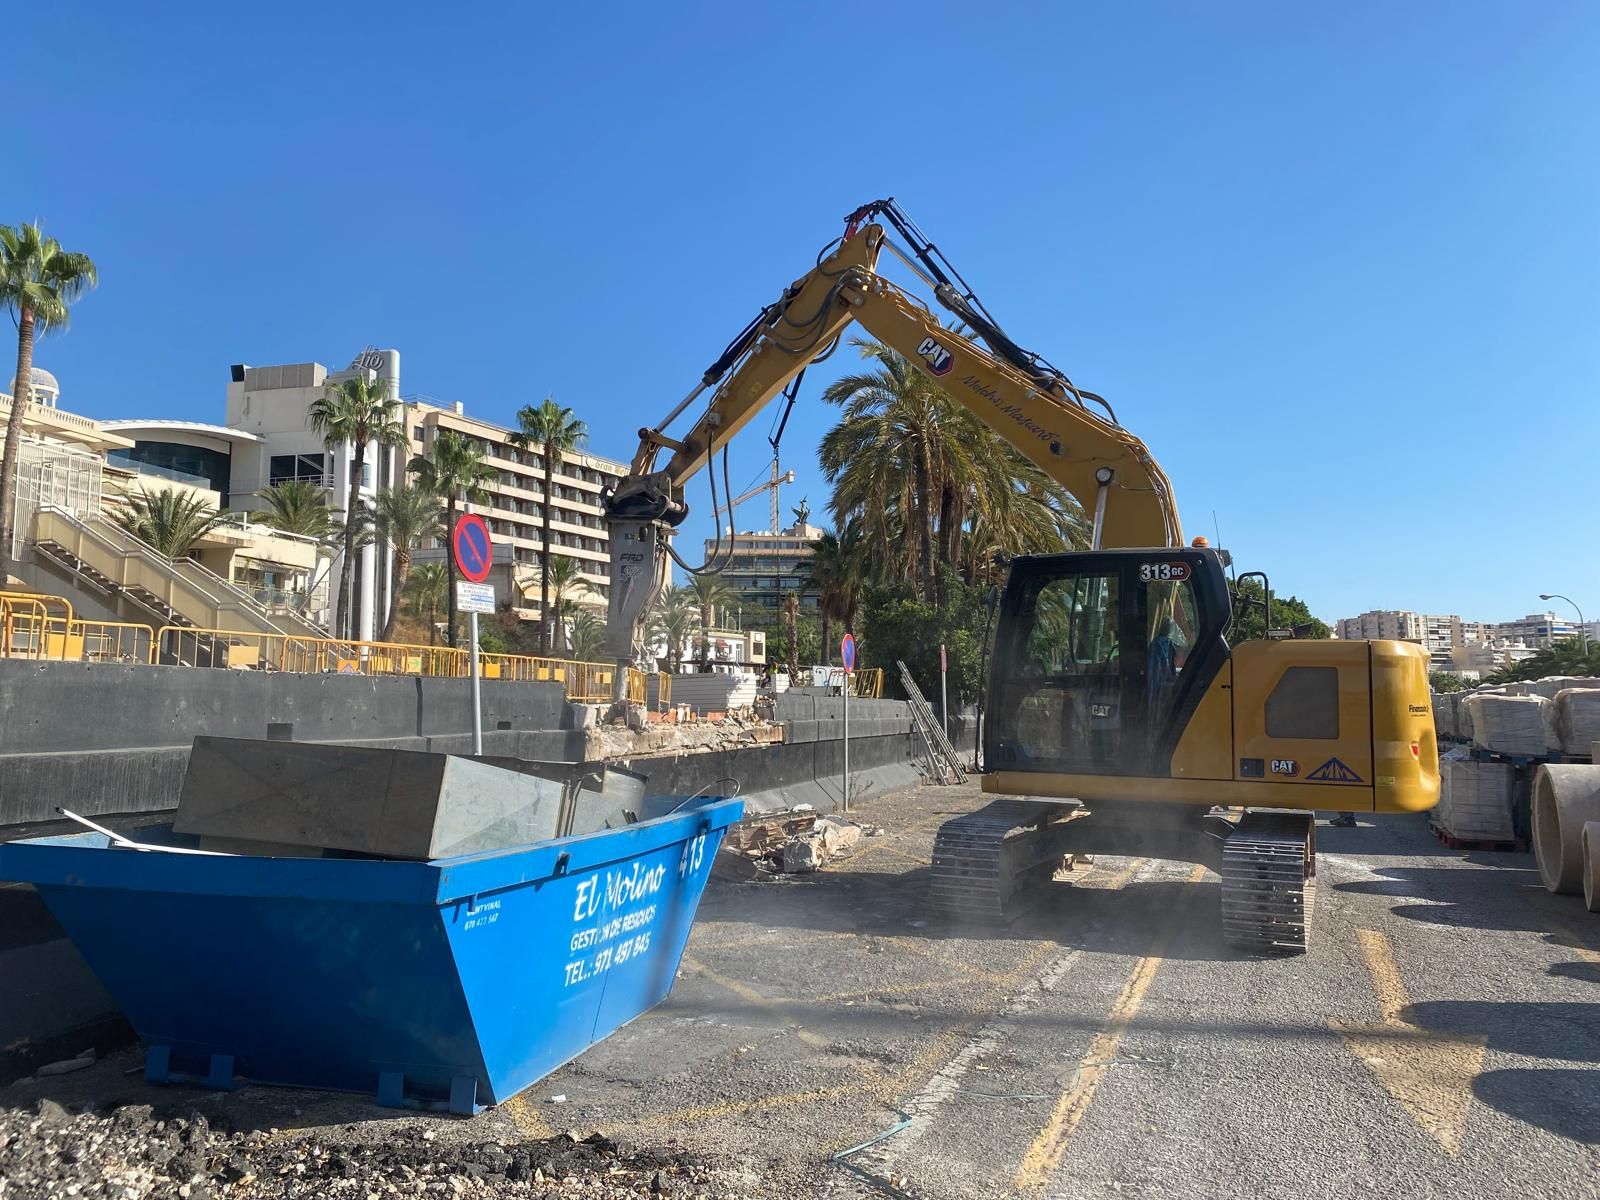 Empiezan los trabajos de demolición de la discoteca Social Club Mallorca del Paseo Marítimo